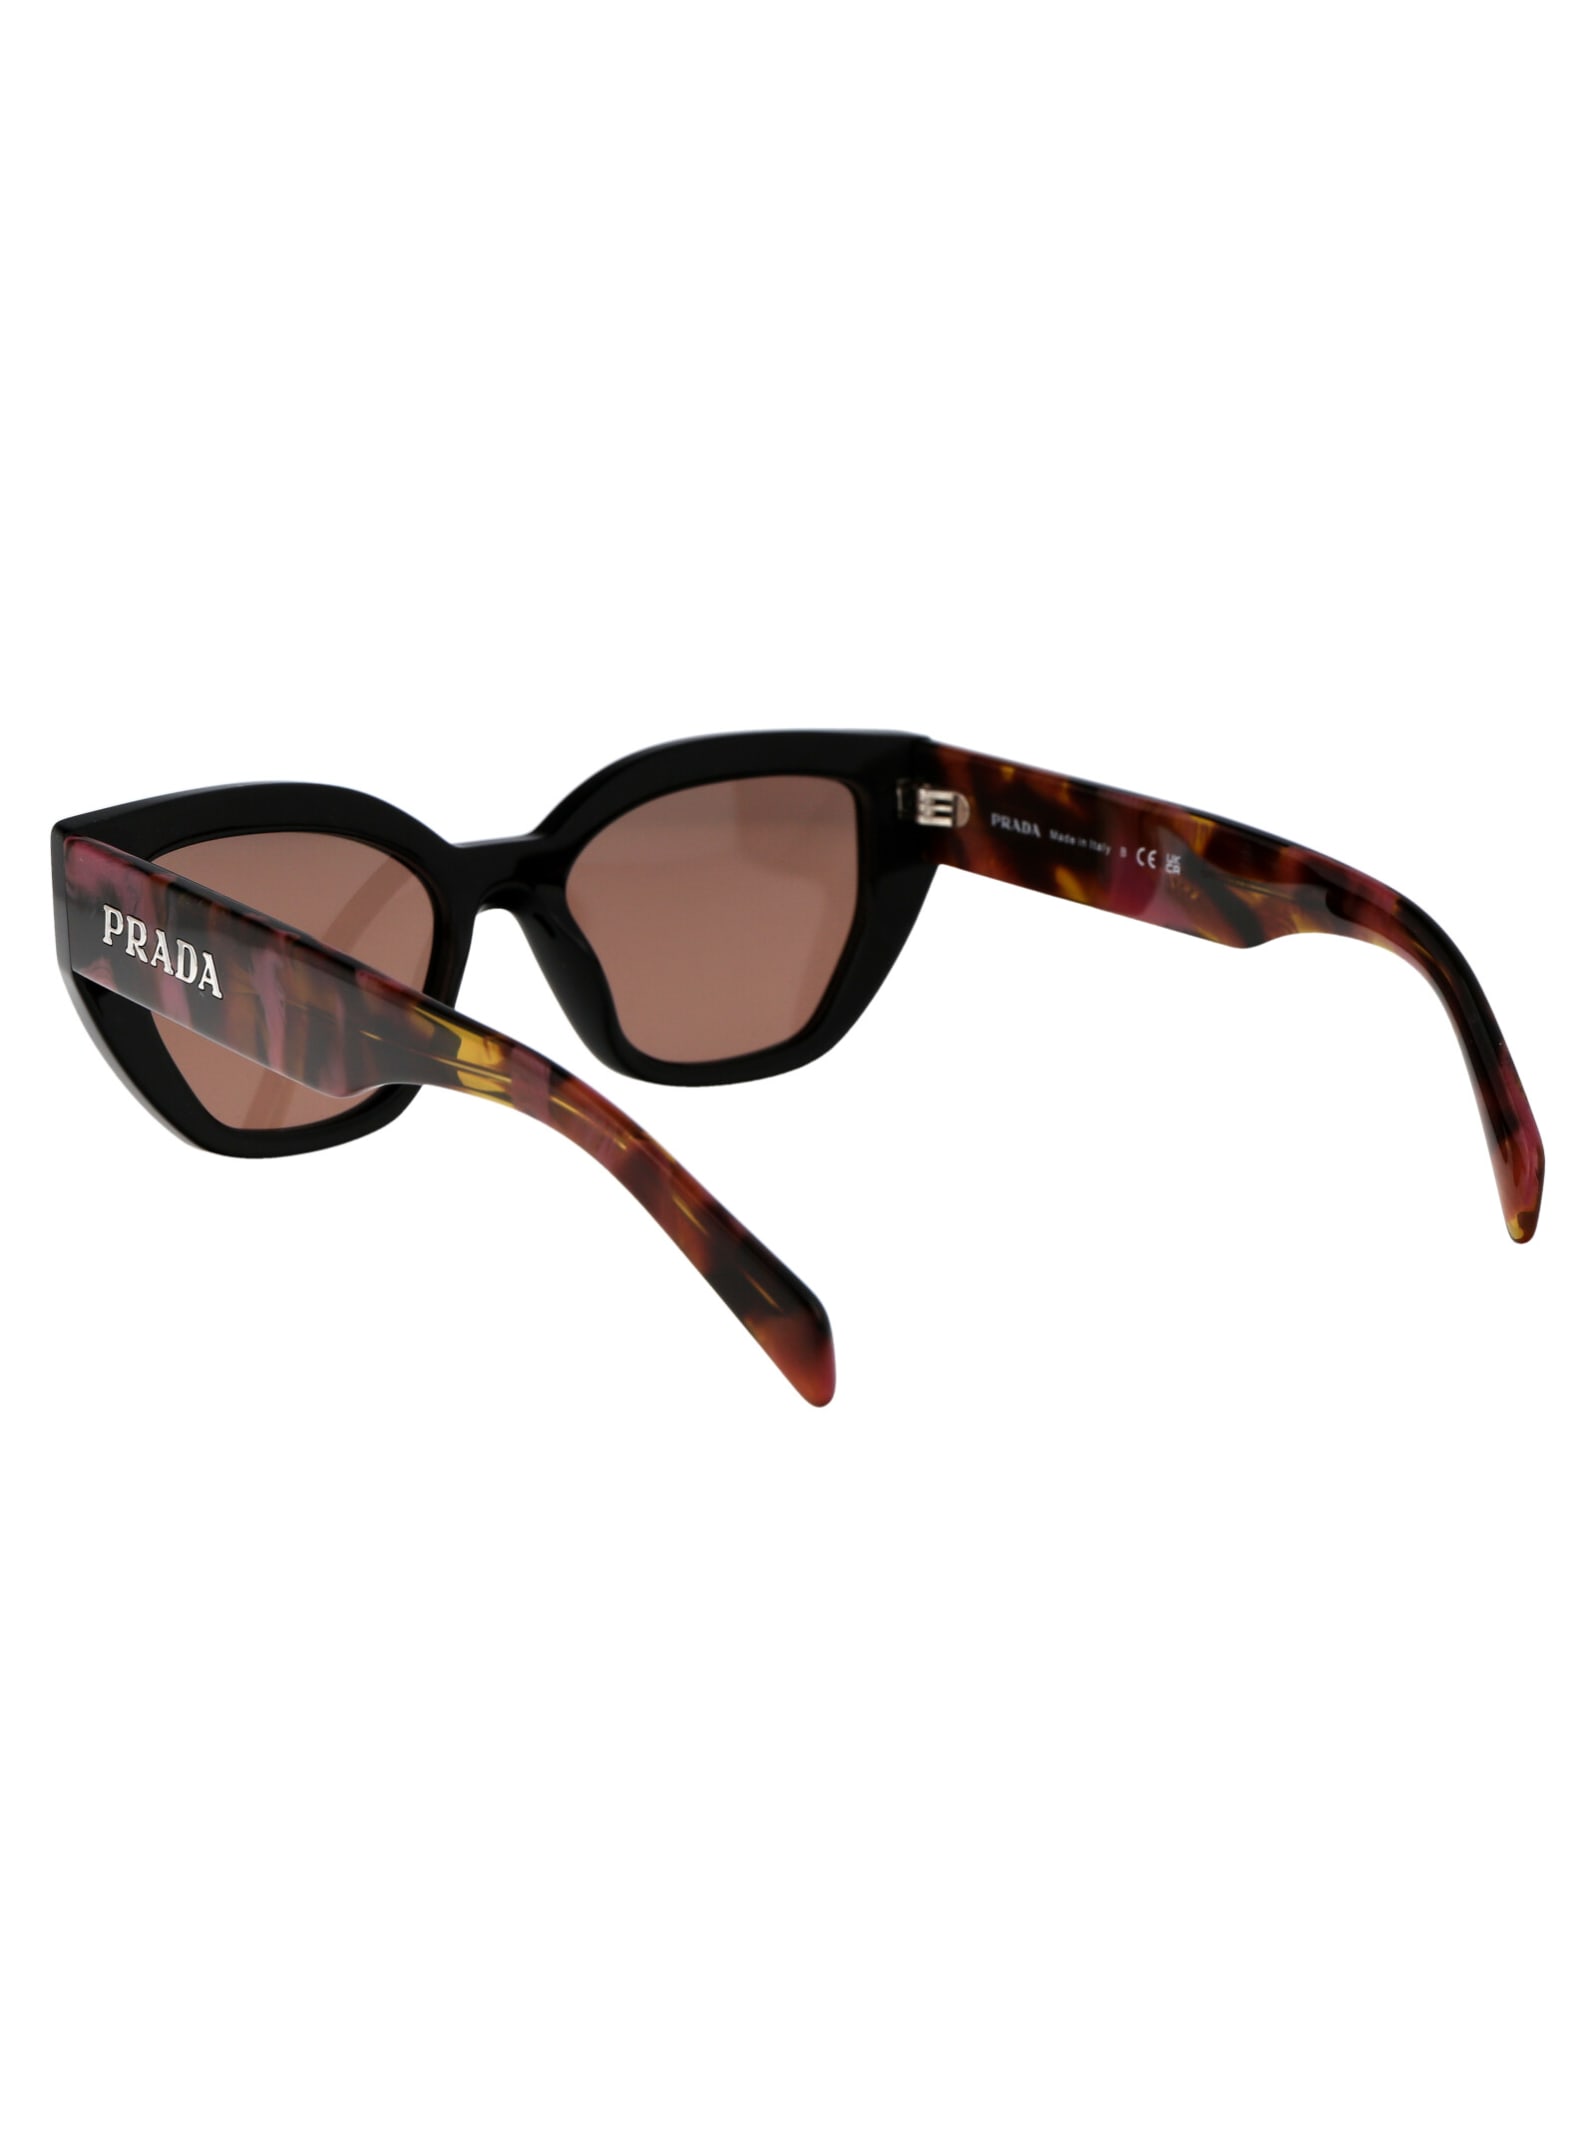 Shop Prada 0pr A09s Sunglasses In 12o10d Mahogany